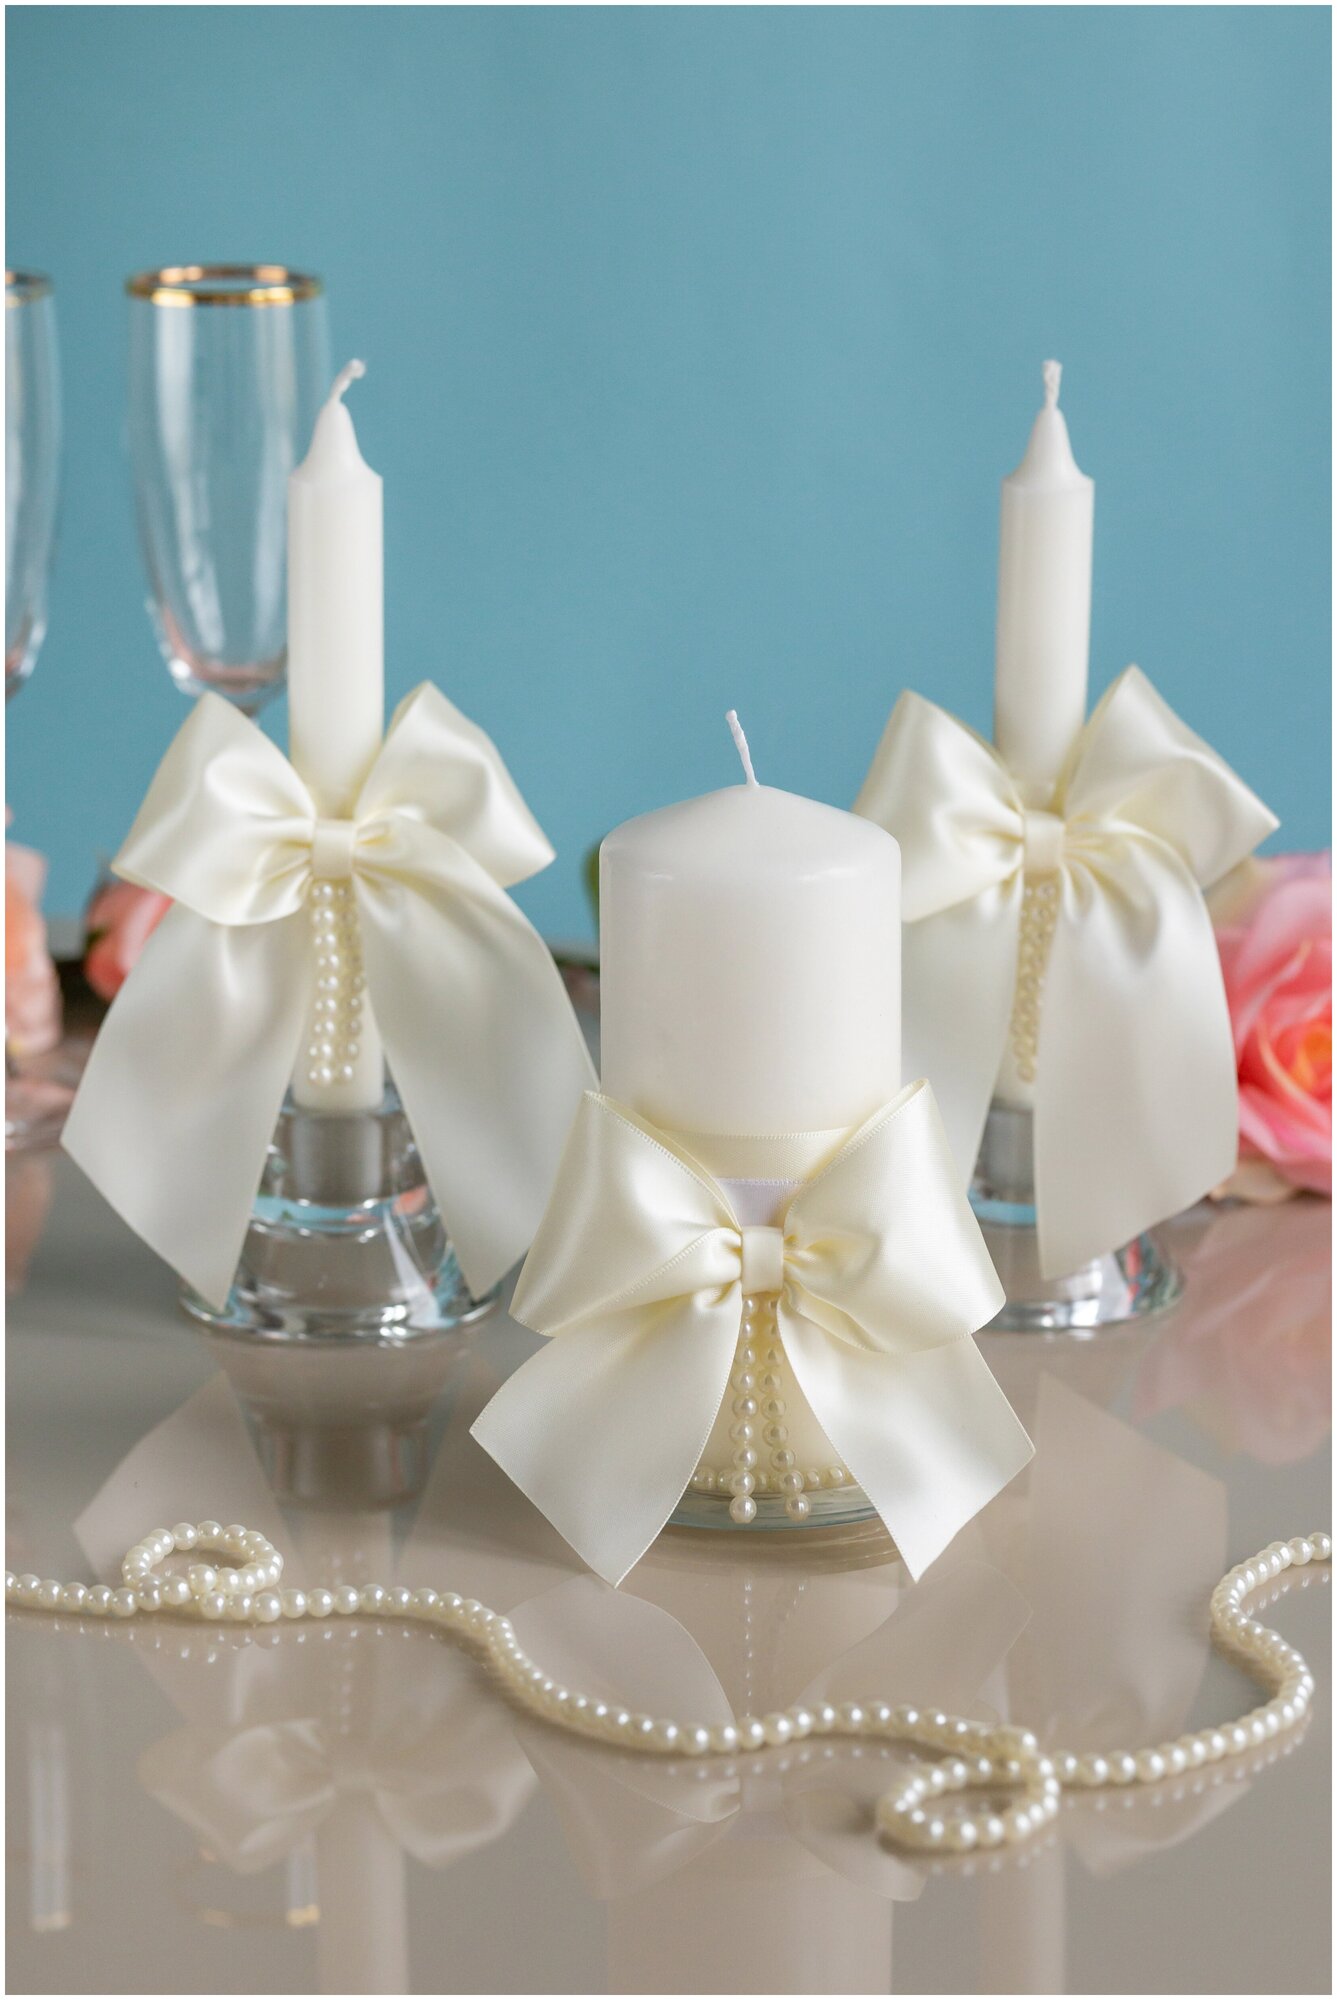 Набор свечей домашний очаг для свадьбы "Европейский стиль" с большими атласными бантами кремового цвета и жемчужным декором ручной работы